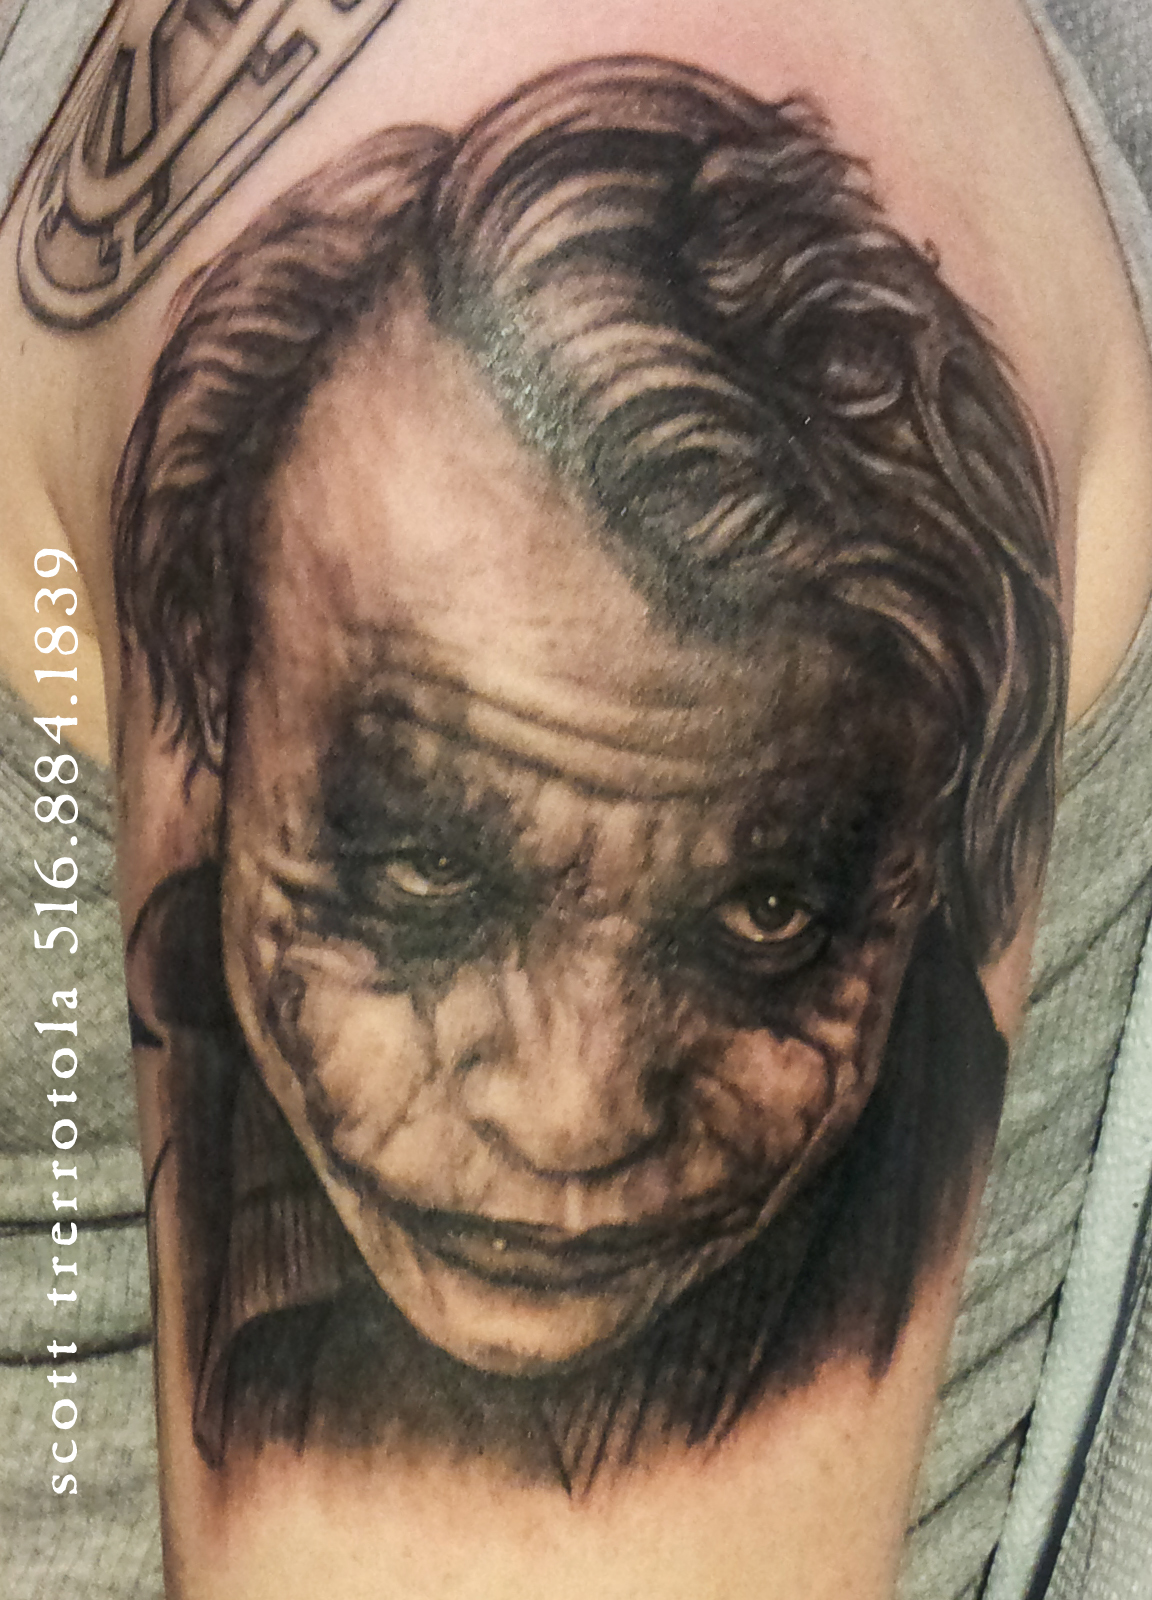 Heath Ledger Joker Tattoo.